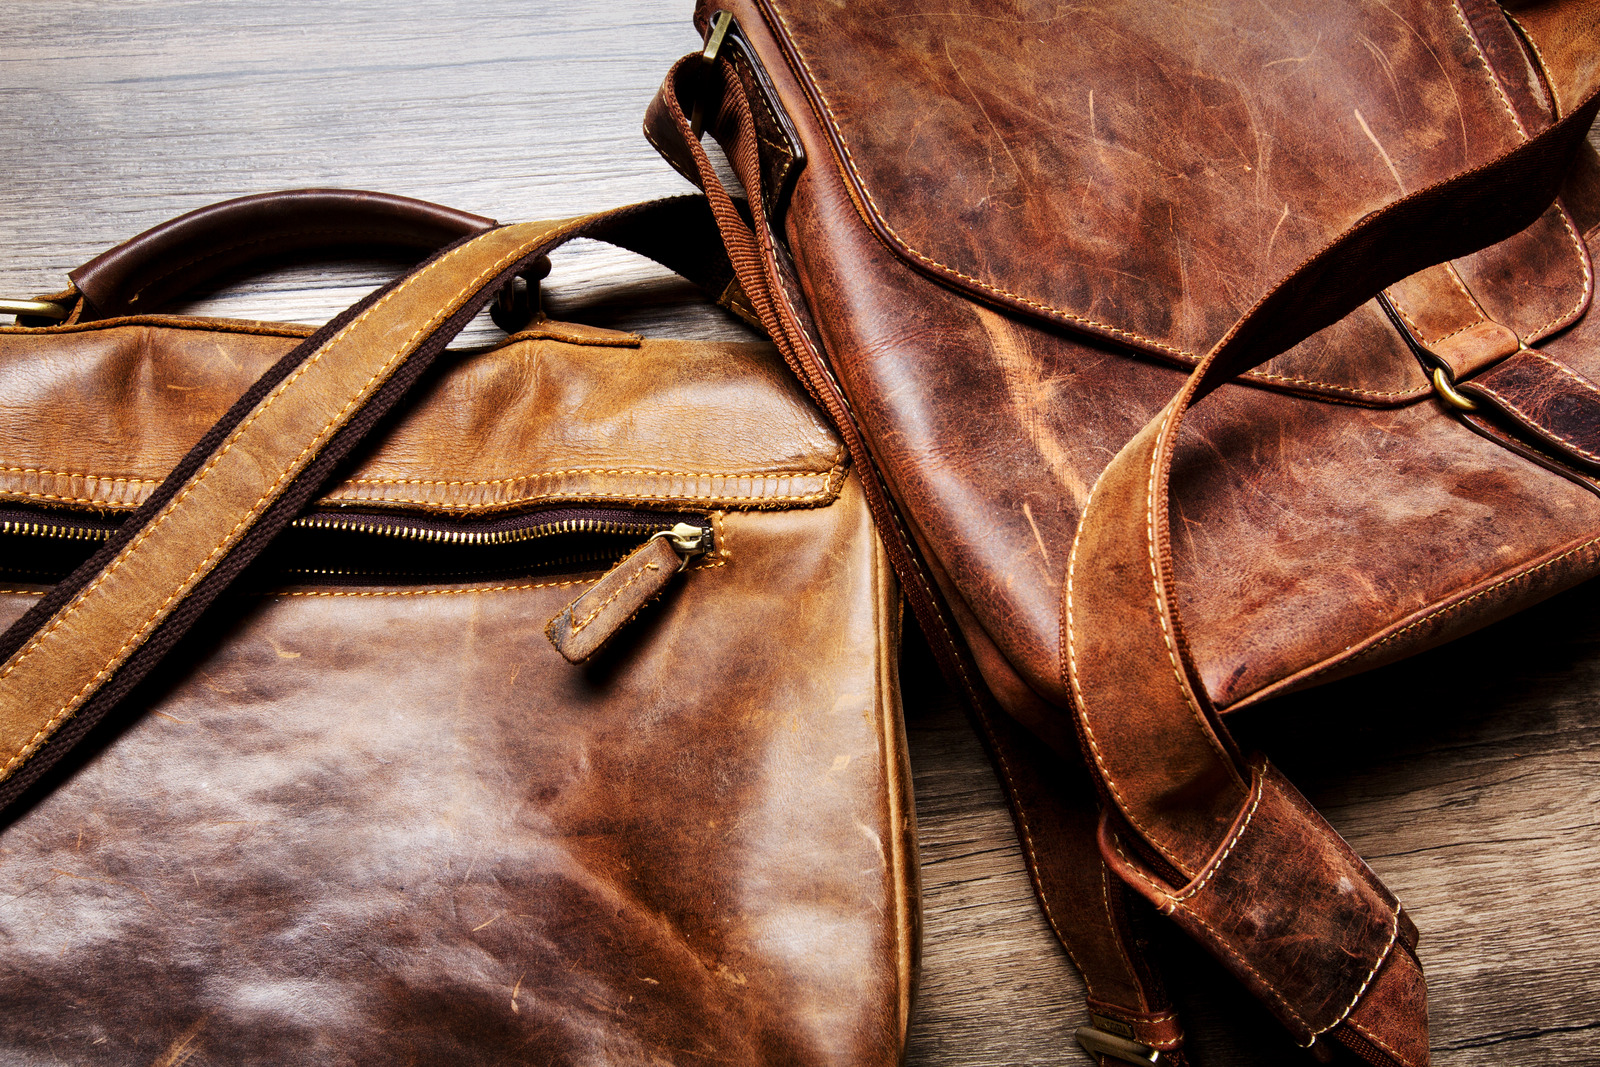 Кожевенная 10. Old Leather. Текстура кожаной сумки. Lion Rose кожаные изделия. Handmade Antique Leather Bags.